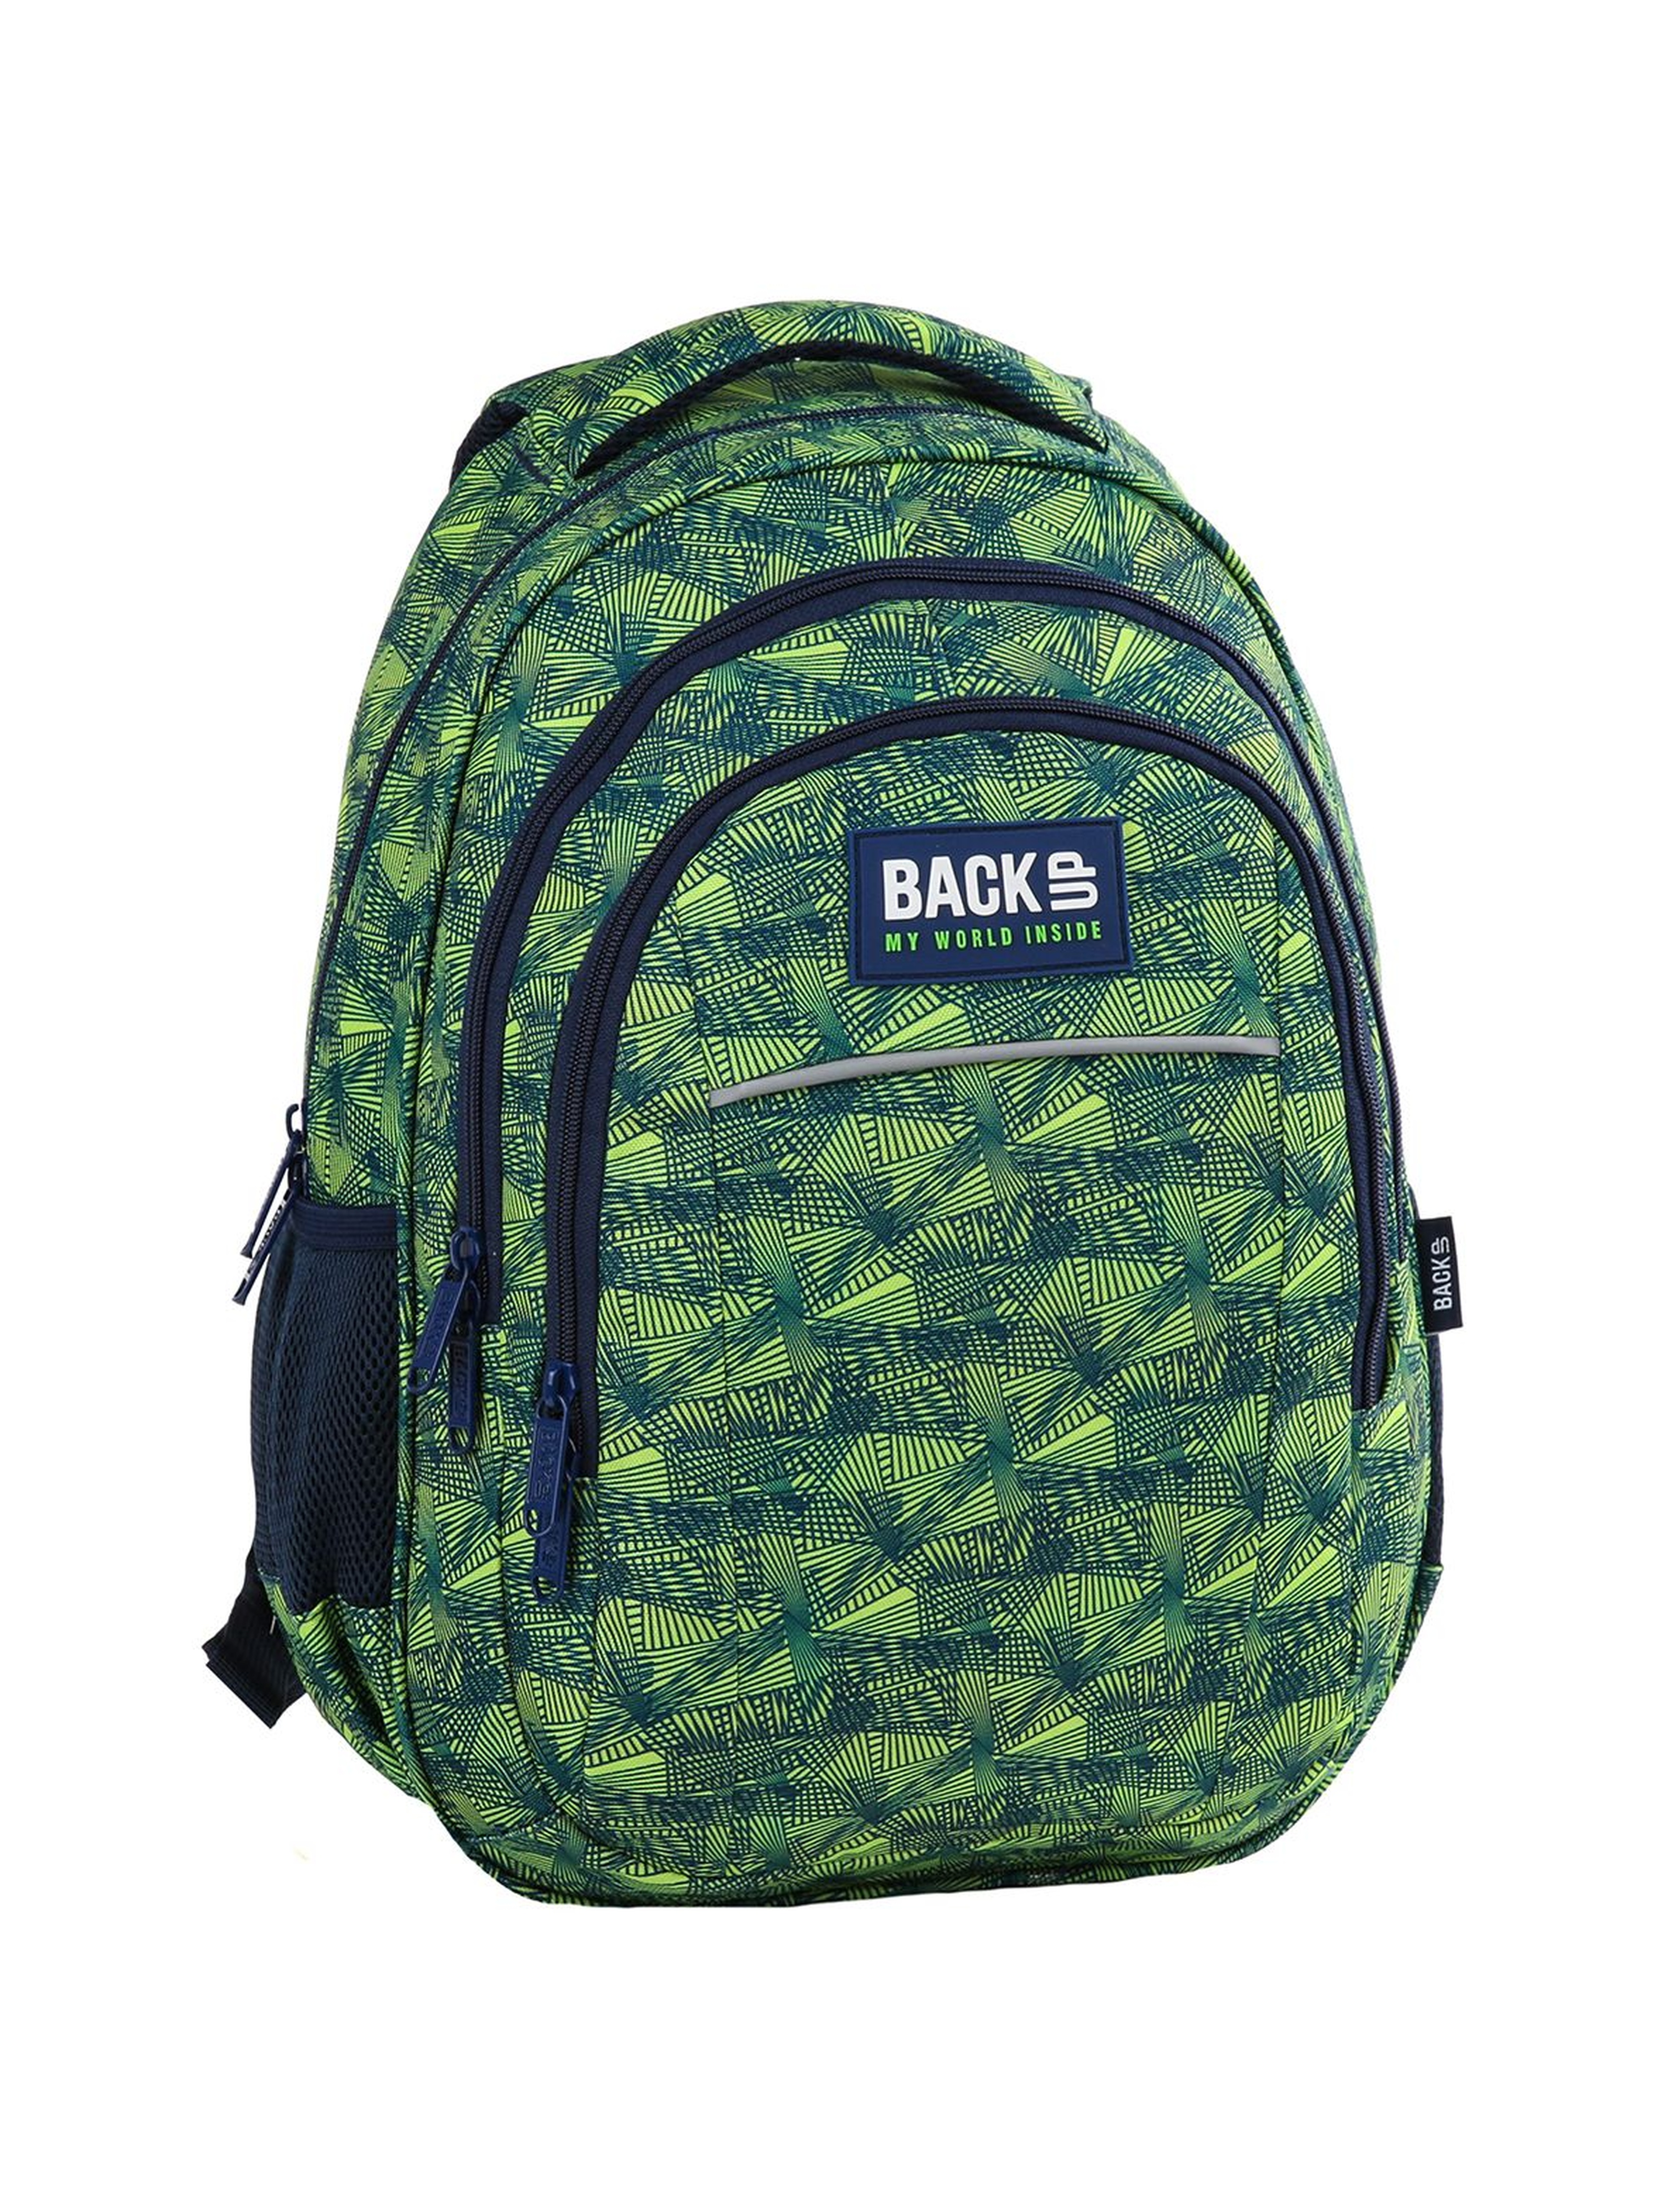 Plecak BACKUP 3komorowy - zielony z odblaskami